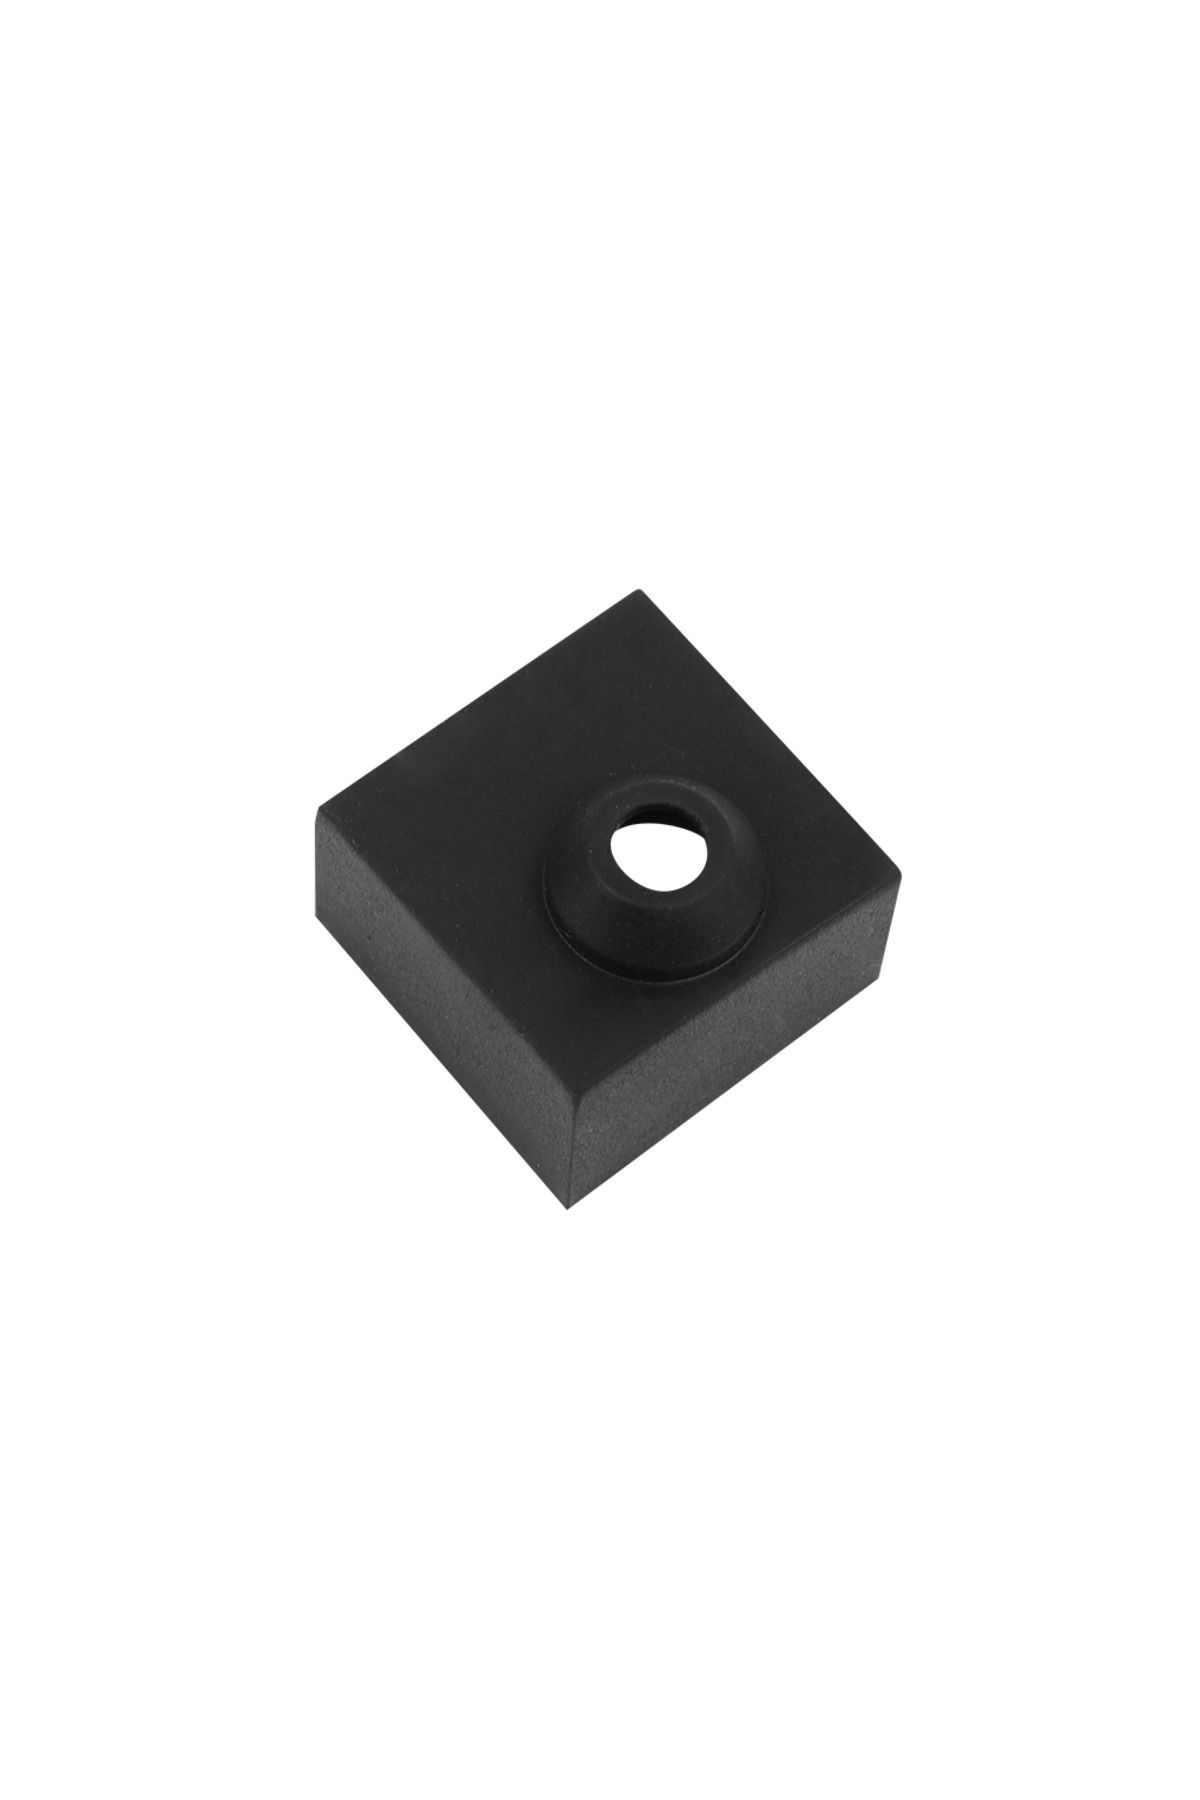 CREALITY 3D Creality Universal Isıtıcı Blok Silikon Kılıfı - Siyah